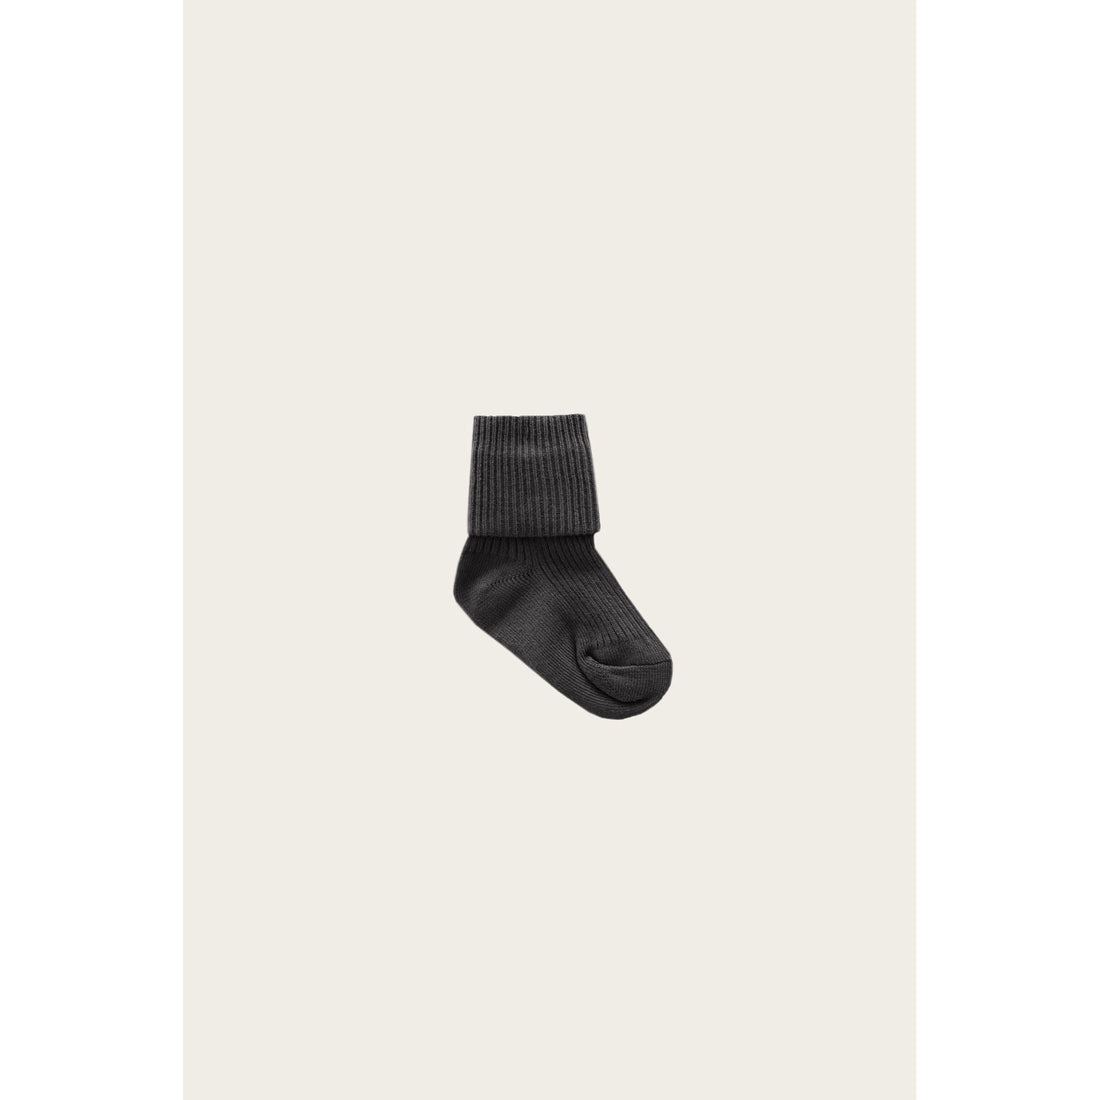 Jamie Kay Dark Marled Grey Rib Socks